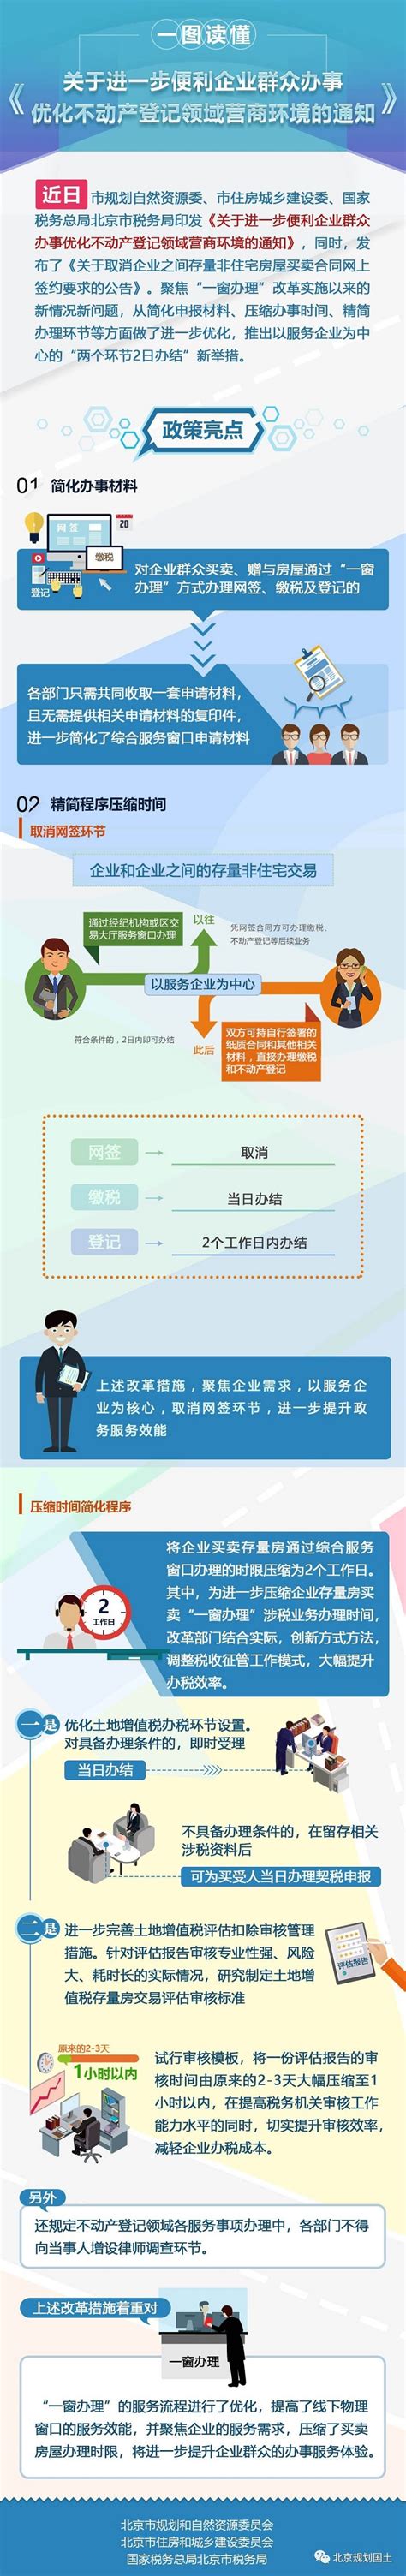 关于加强优化营商环境宣传工作的通知-华容县政府网